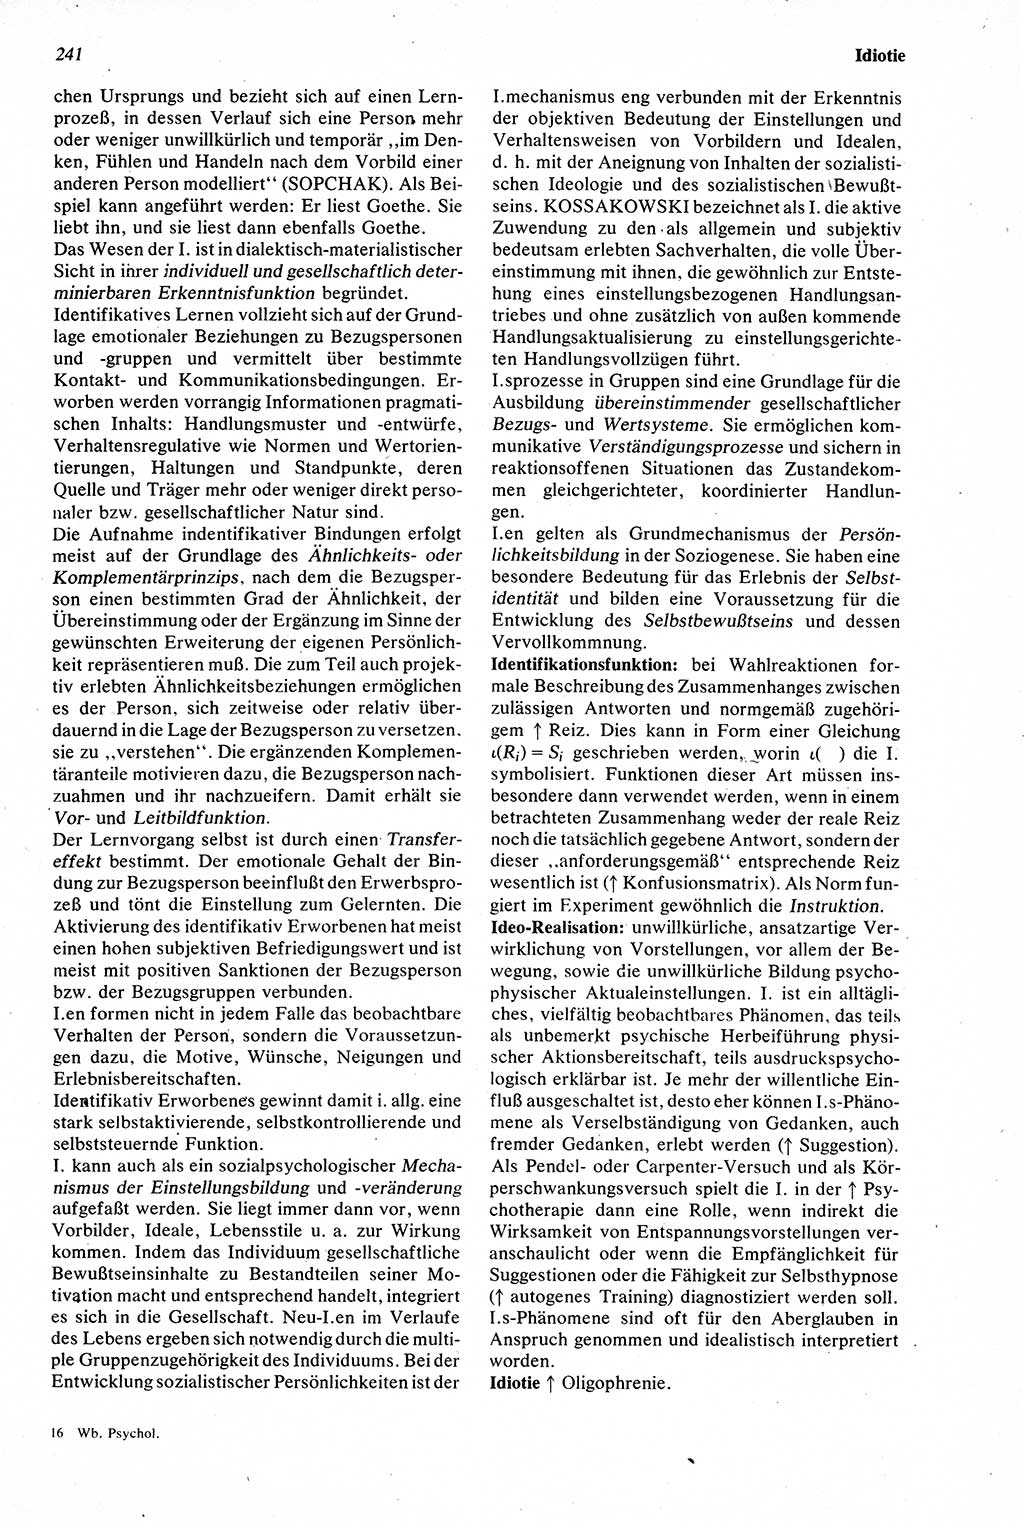 Wörterbuch der Psychologie [Deutsche Demokratische Republik (DDR)] 1976, Seite 241 (Wb. Psych. DDR 1976, S. 241)